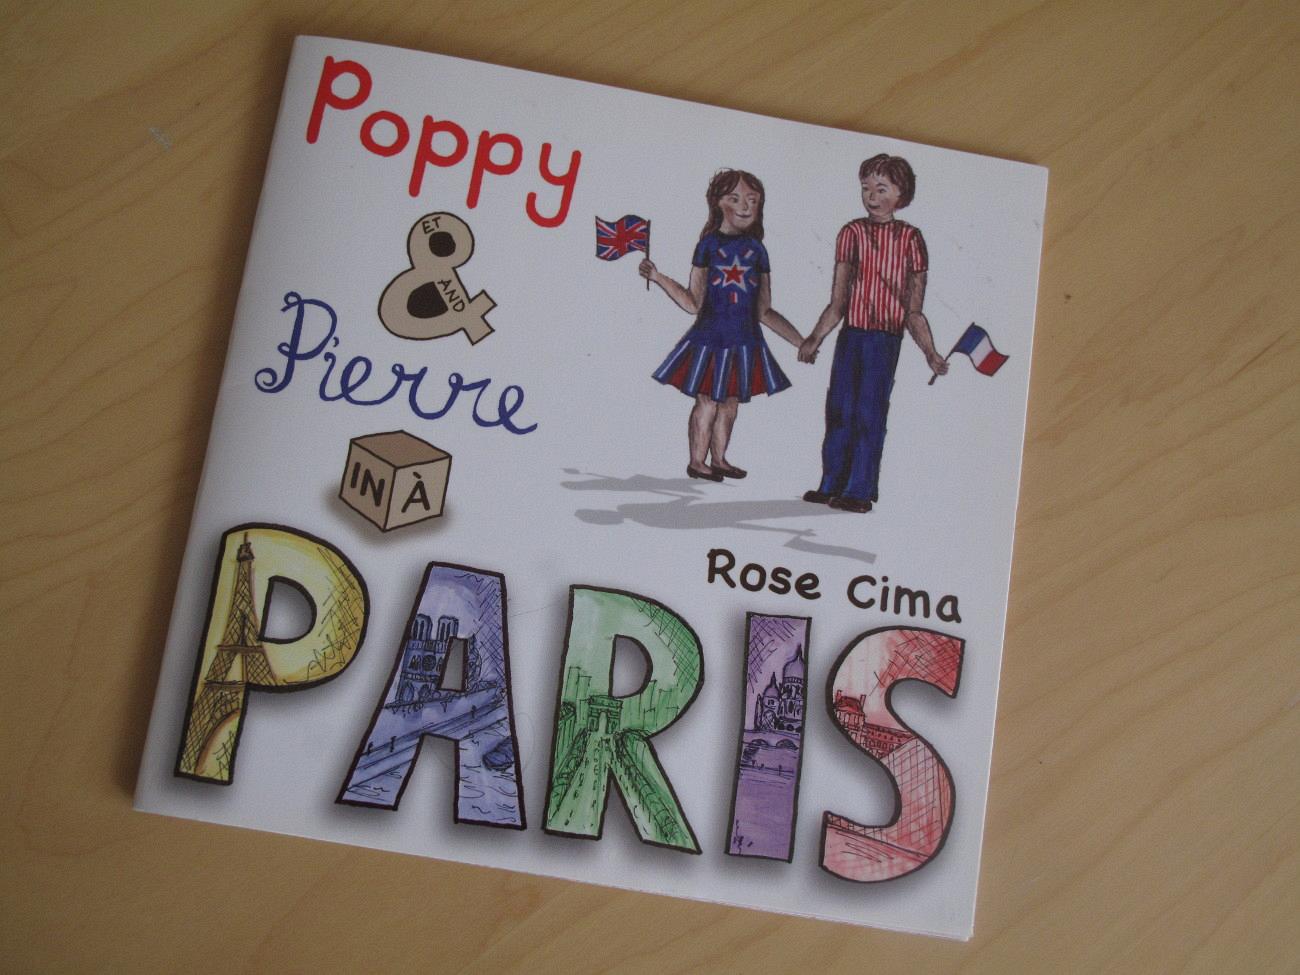 Poppy et Pierre à Paris